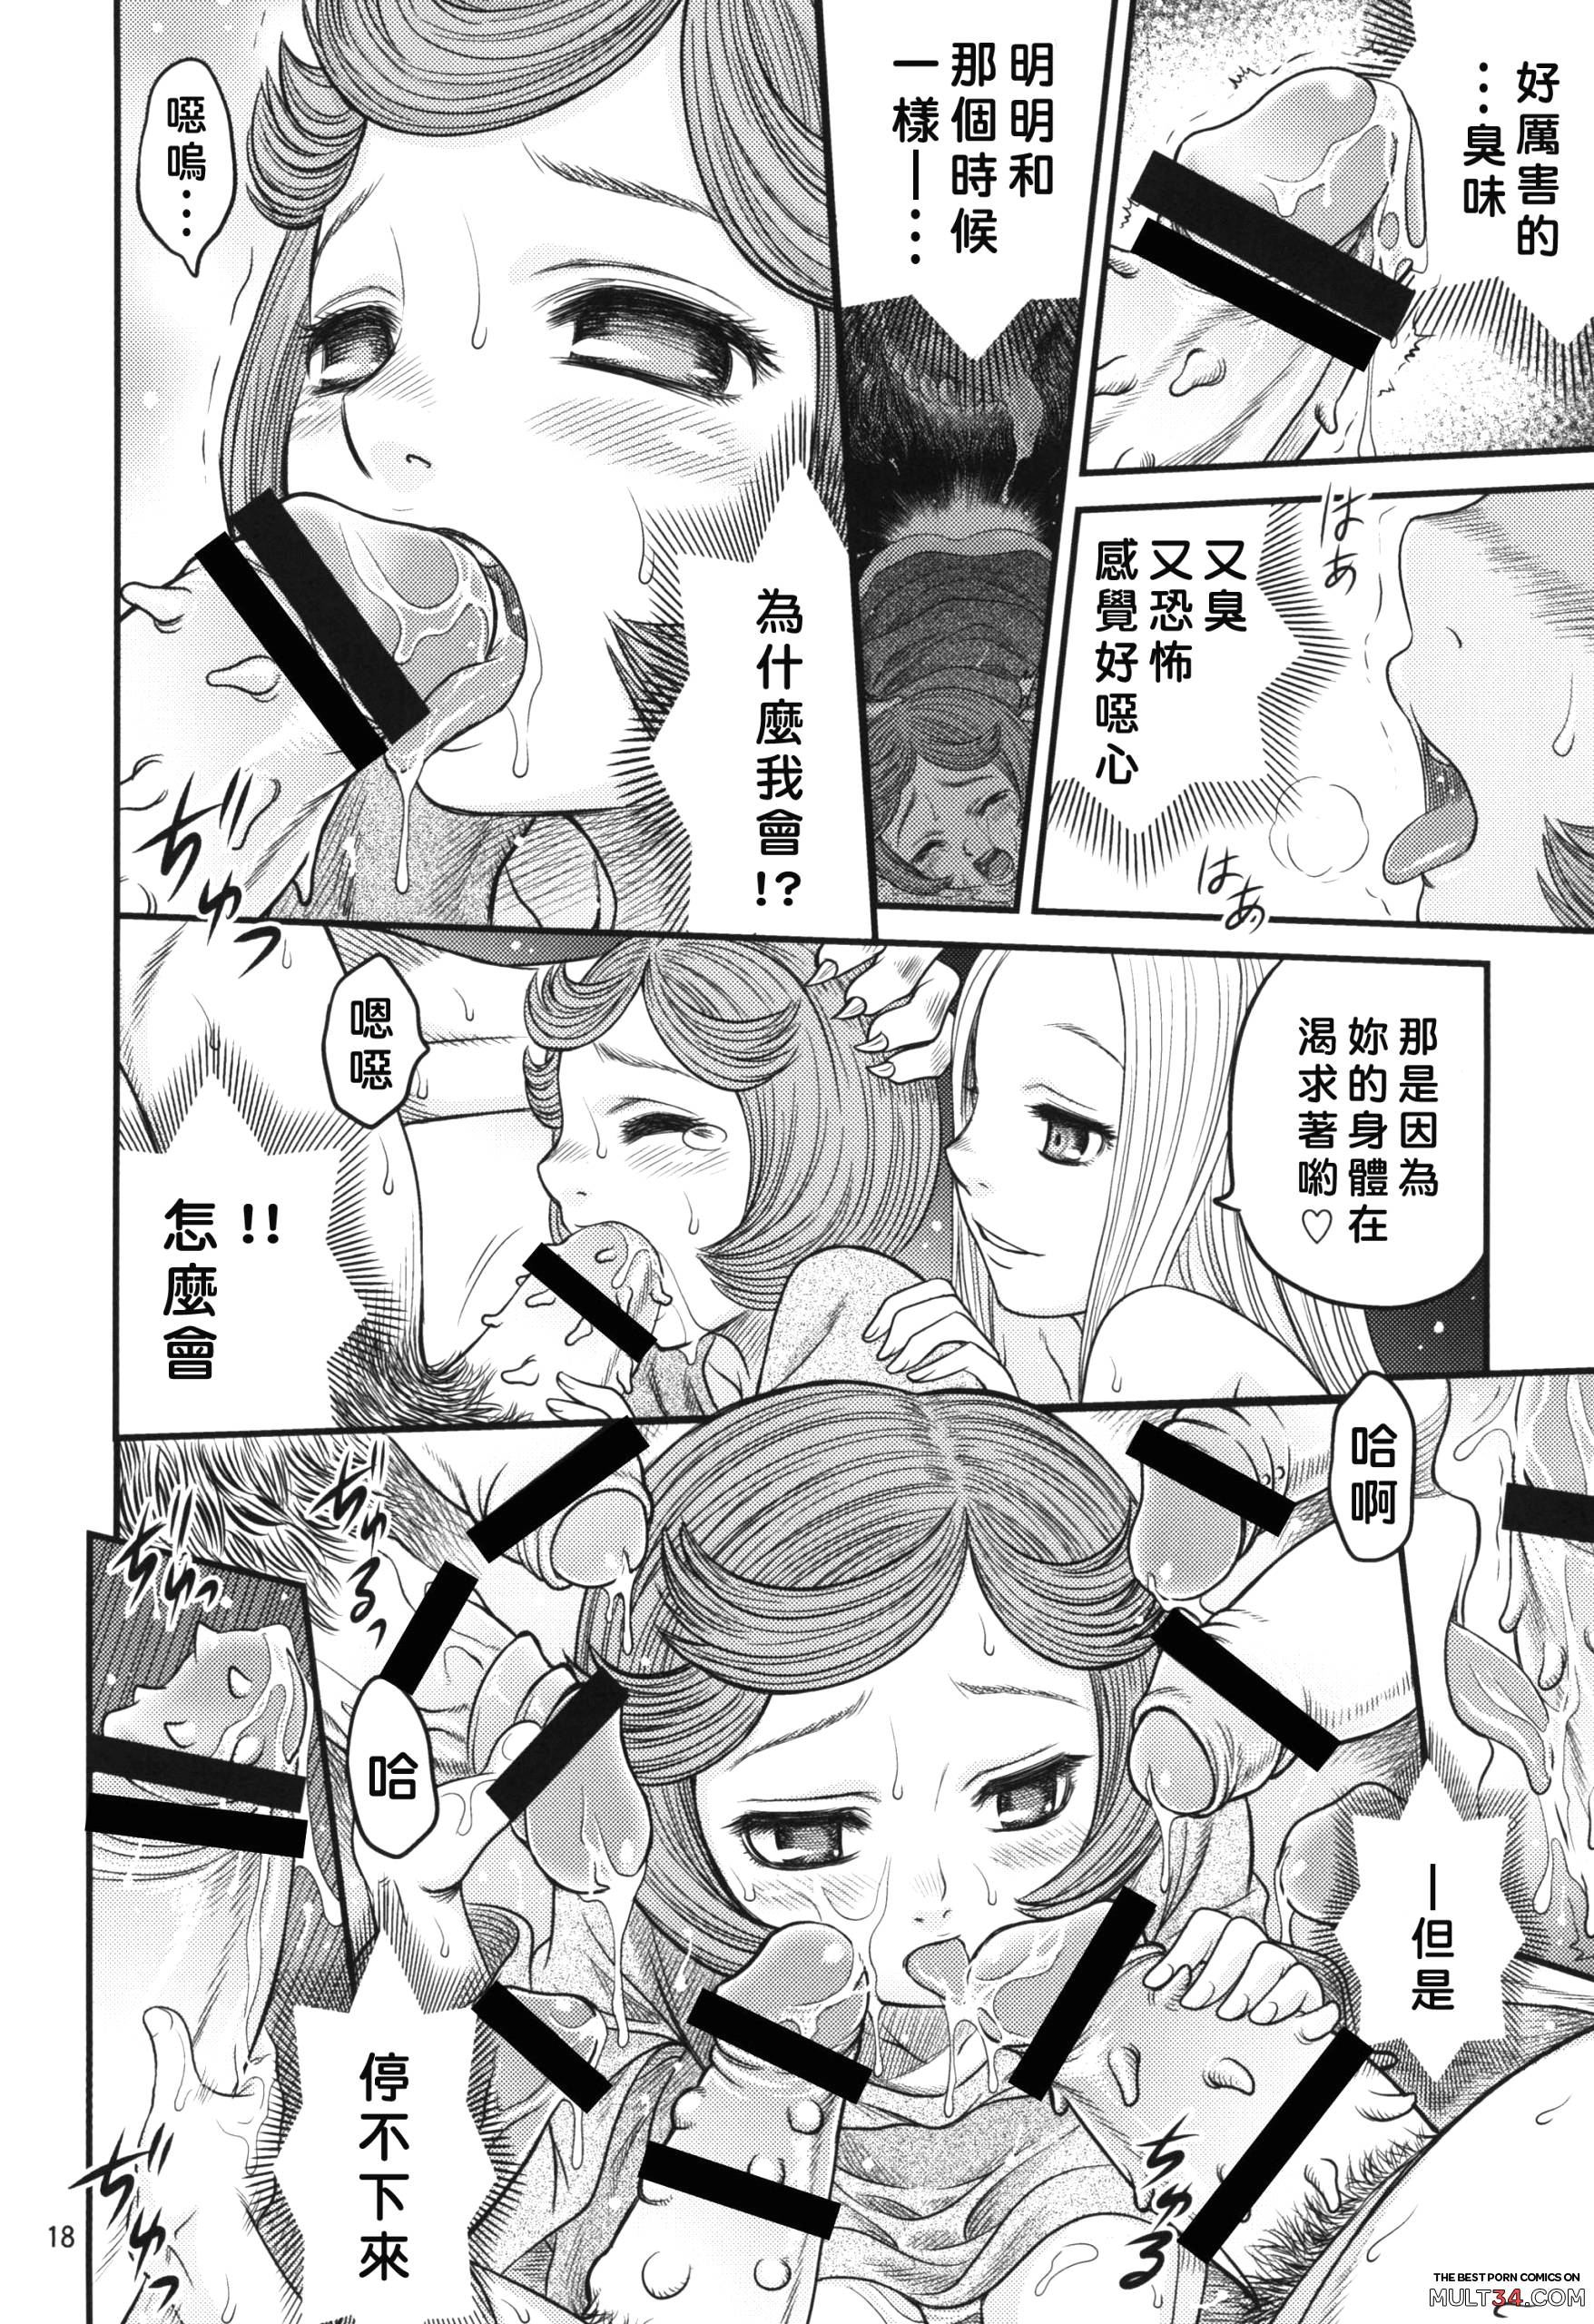 Kuru Kuru Sonia!! page 17